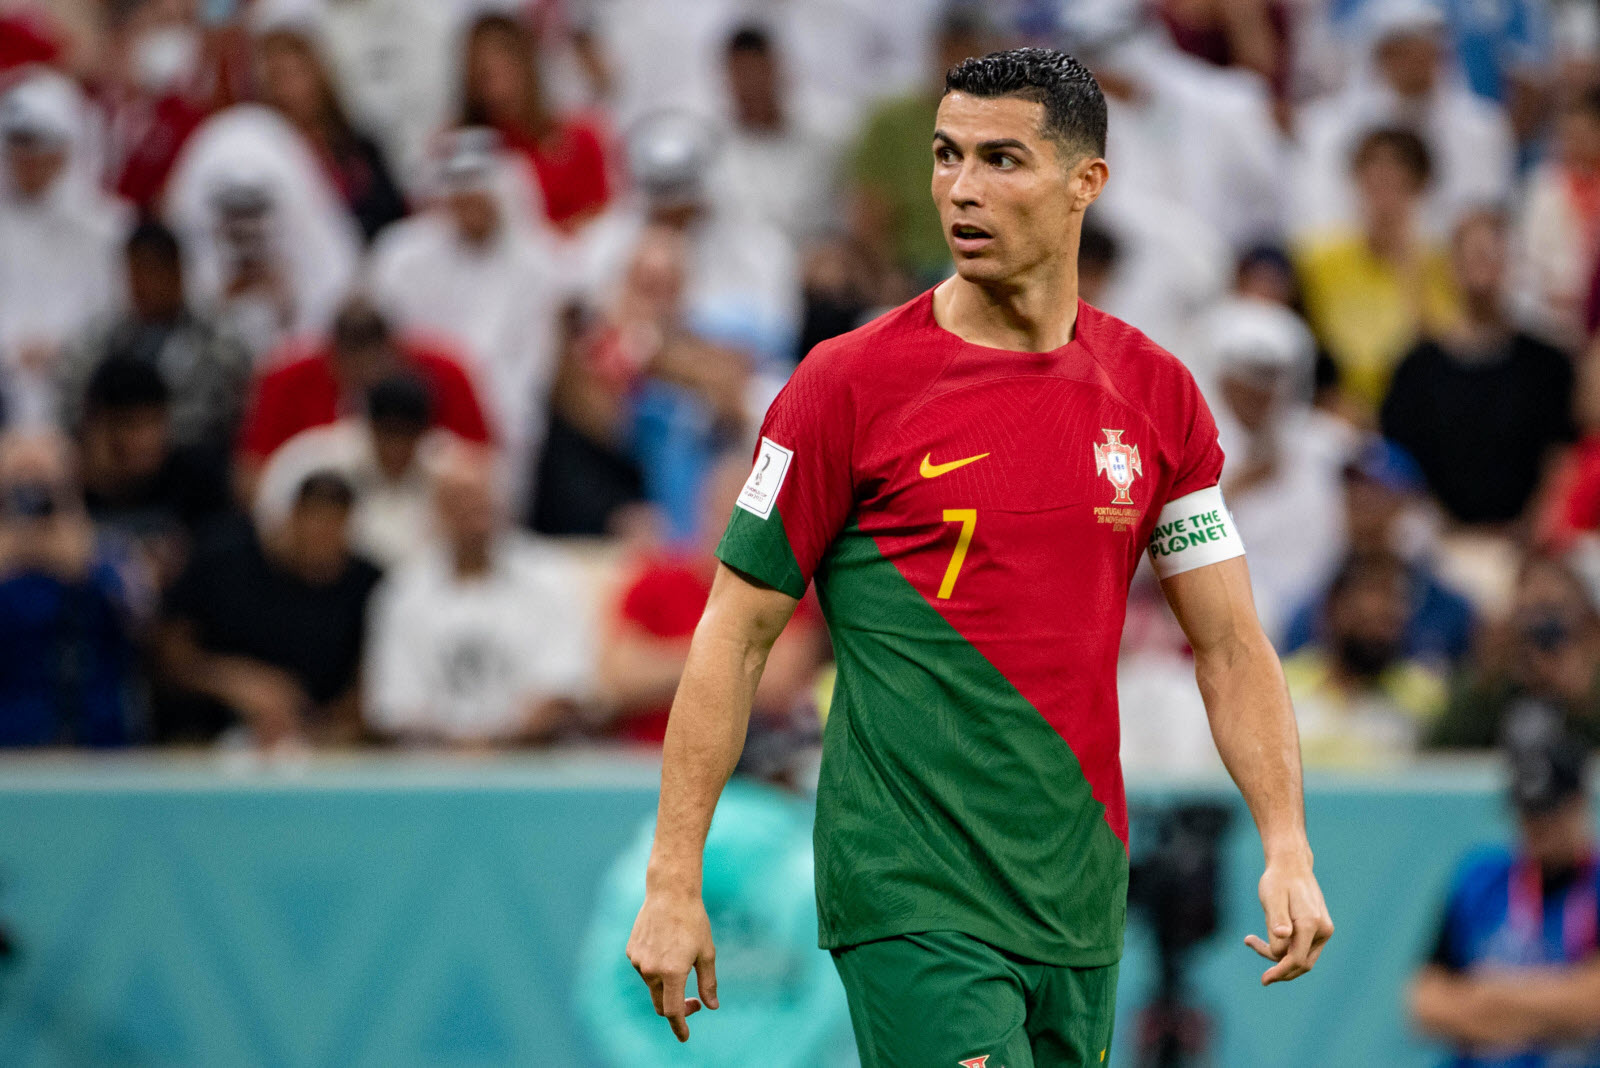 Santos fait tourner mais garde Cristiano, les compos officielles de Portugal – Corée du Sud